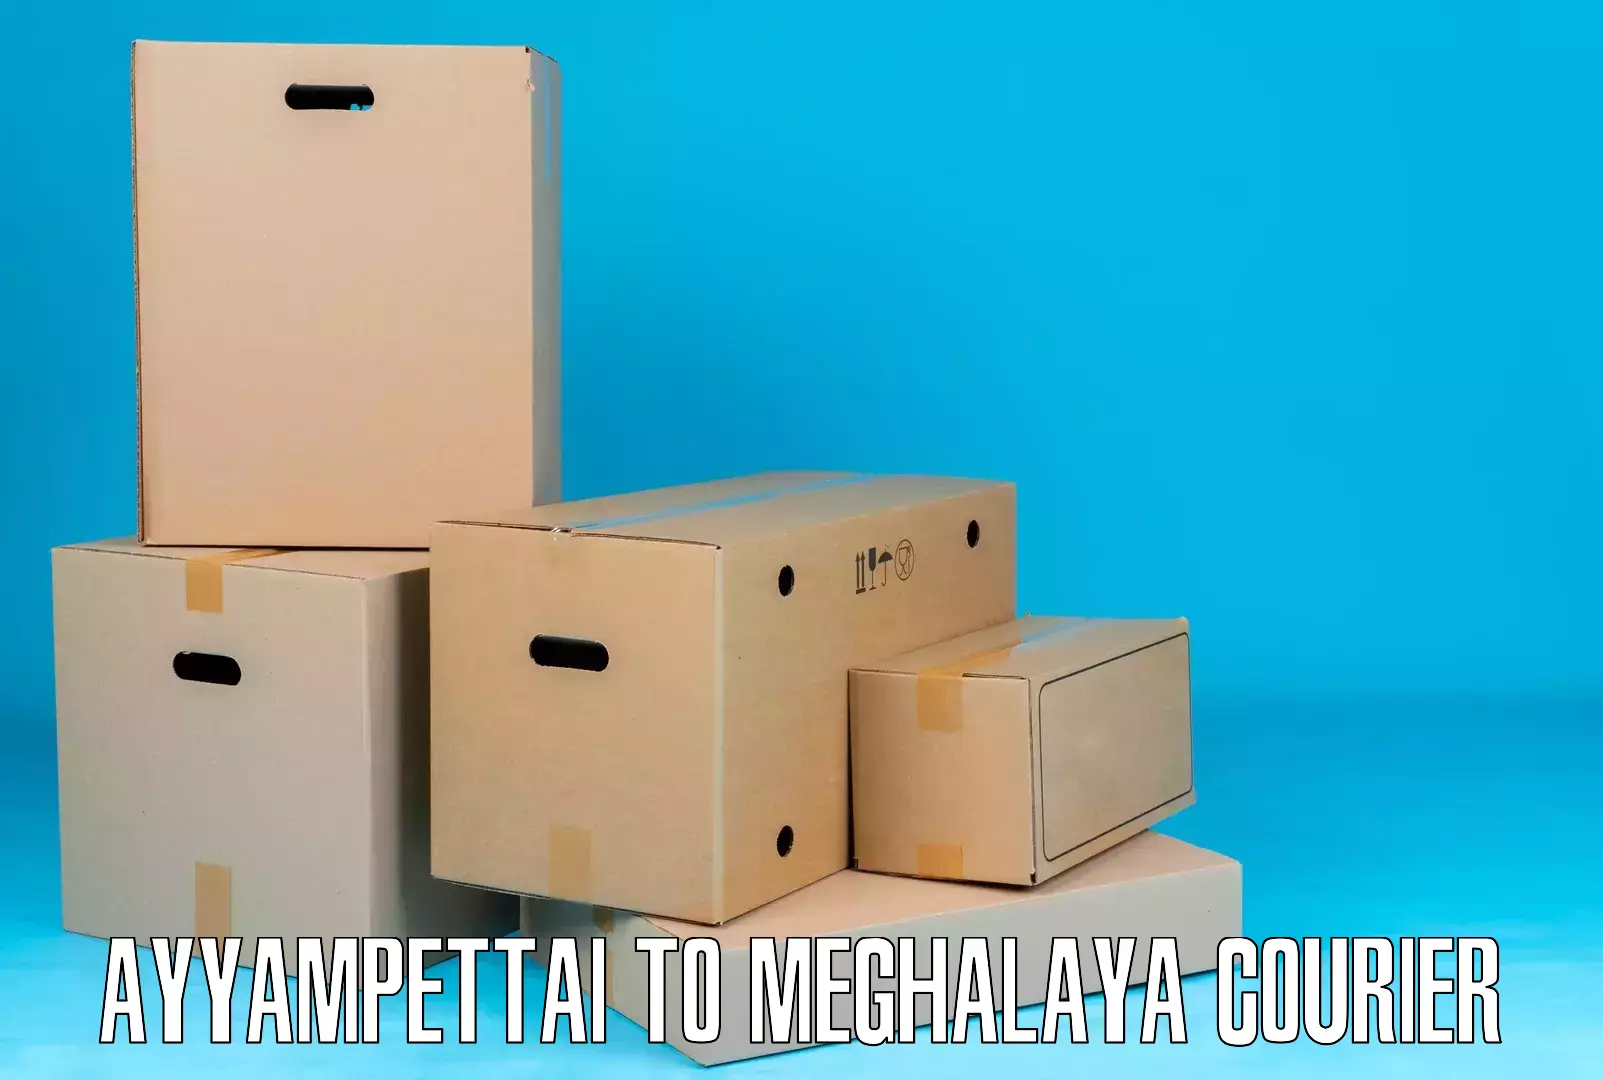 Nationwide courier service Ayyampettai to Meghalaya